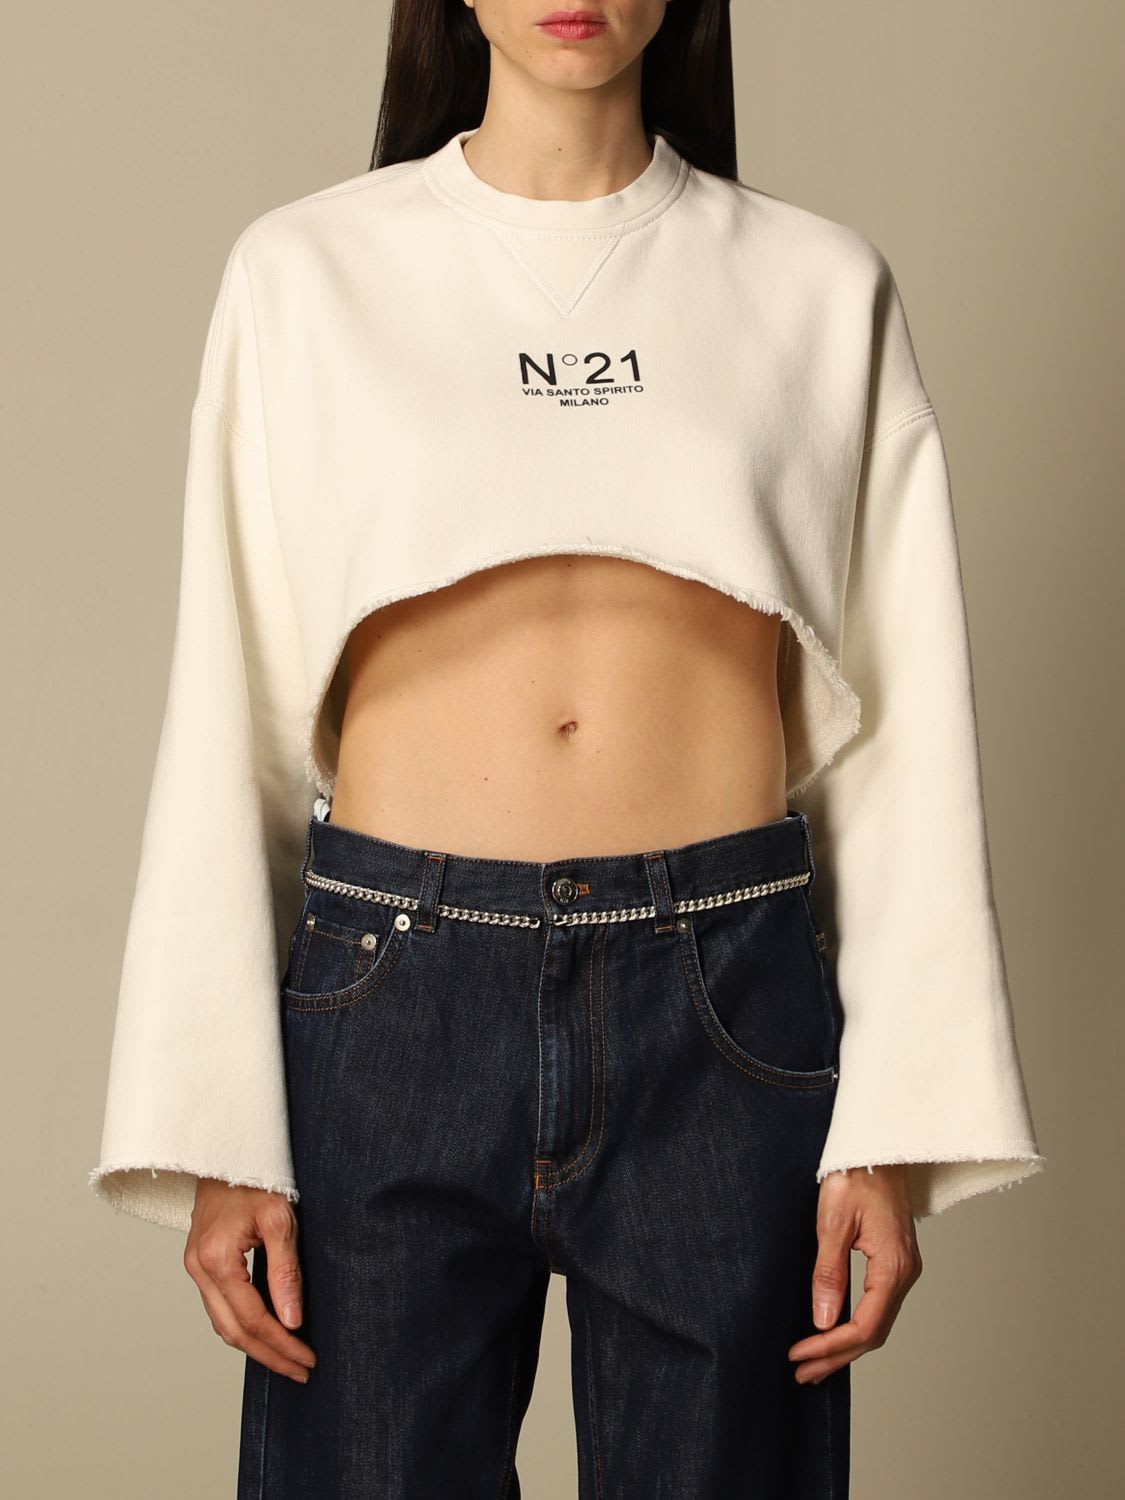 N.21 N° 21 Sweatshirt N ° 21 Cropped Sweatshirt With Logo